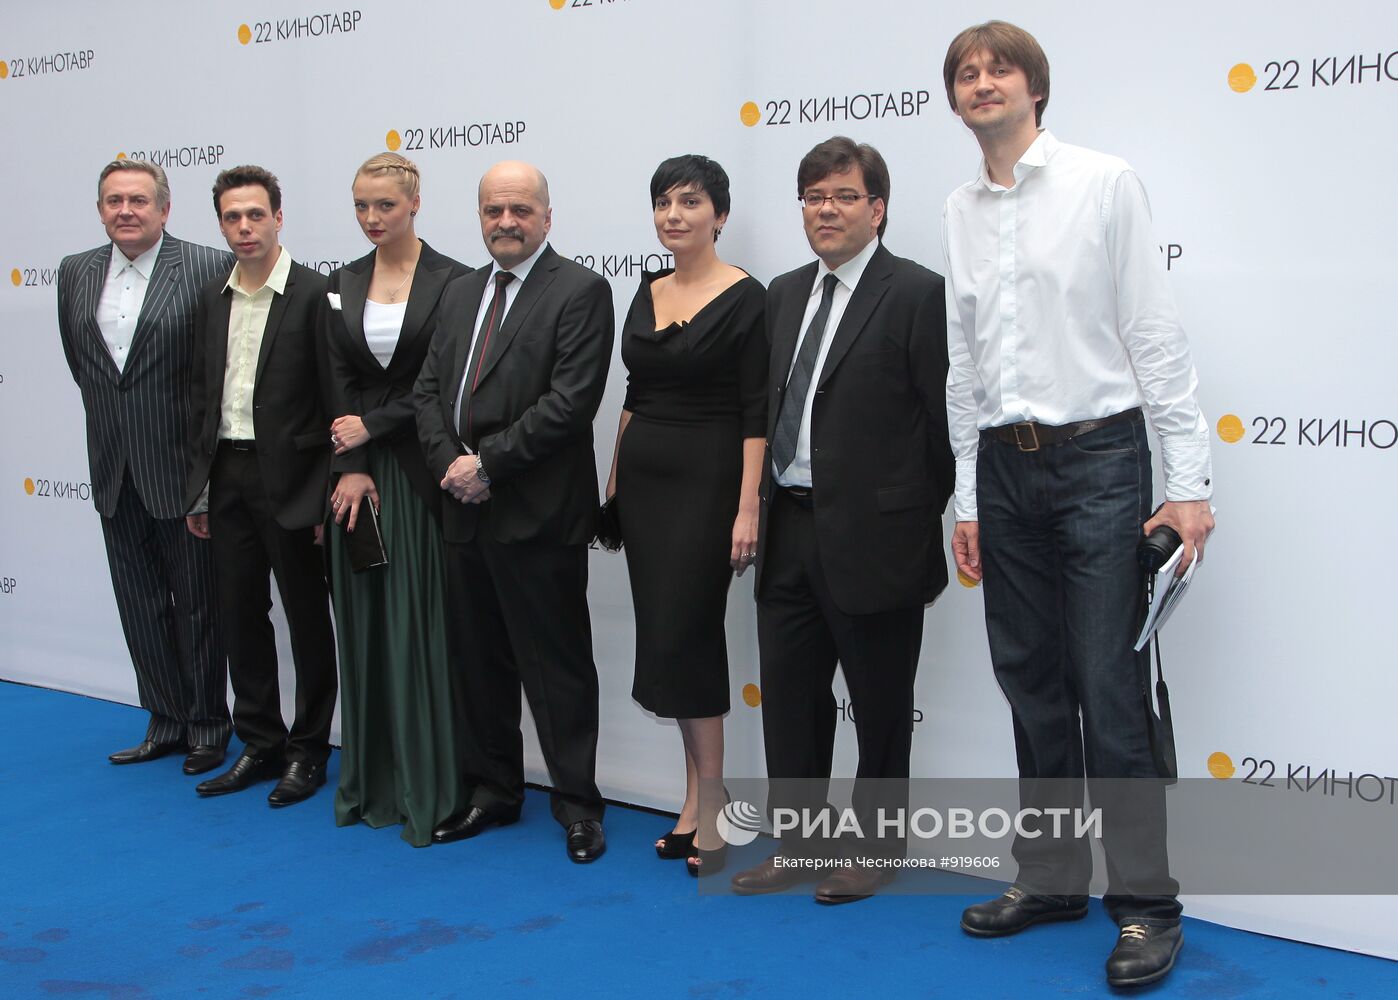 Открытие XXII российского кинофестиваля "Кинотавр-2011"